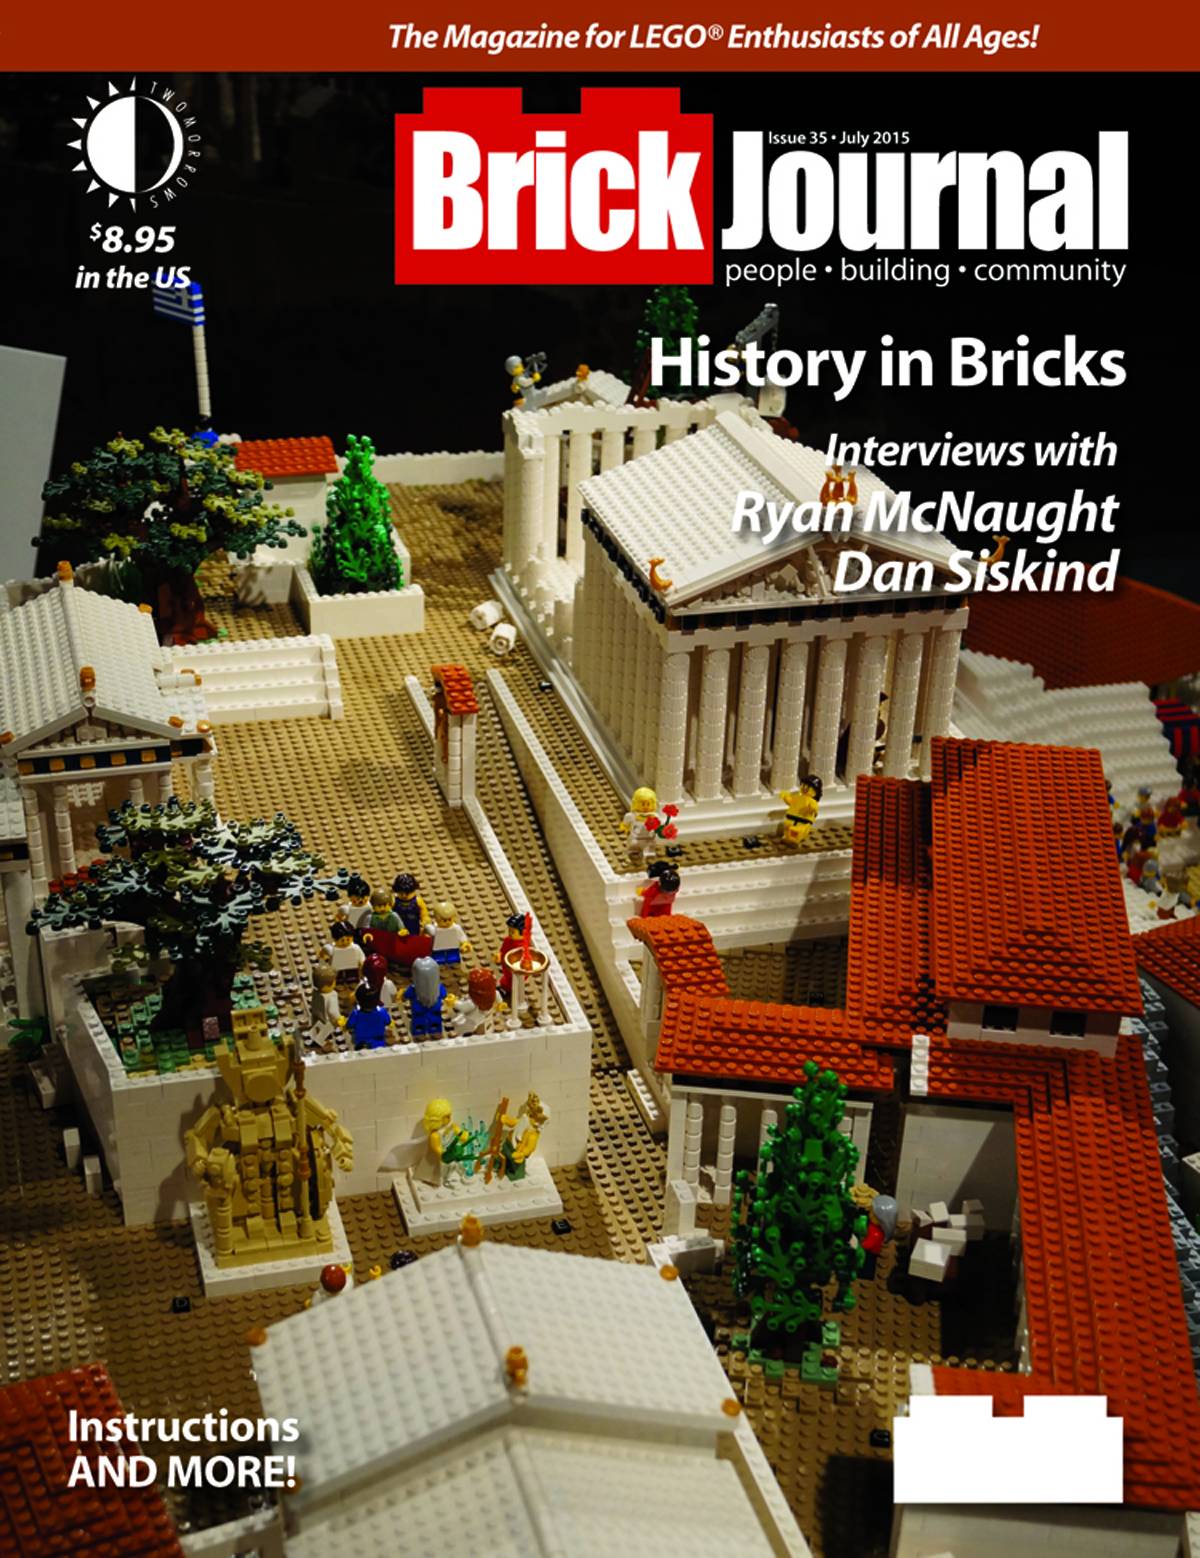 Brickjournal #35